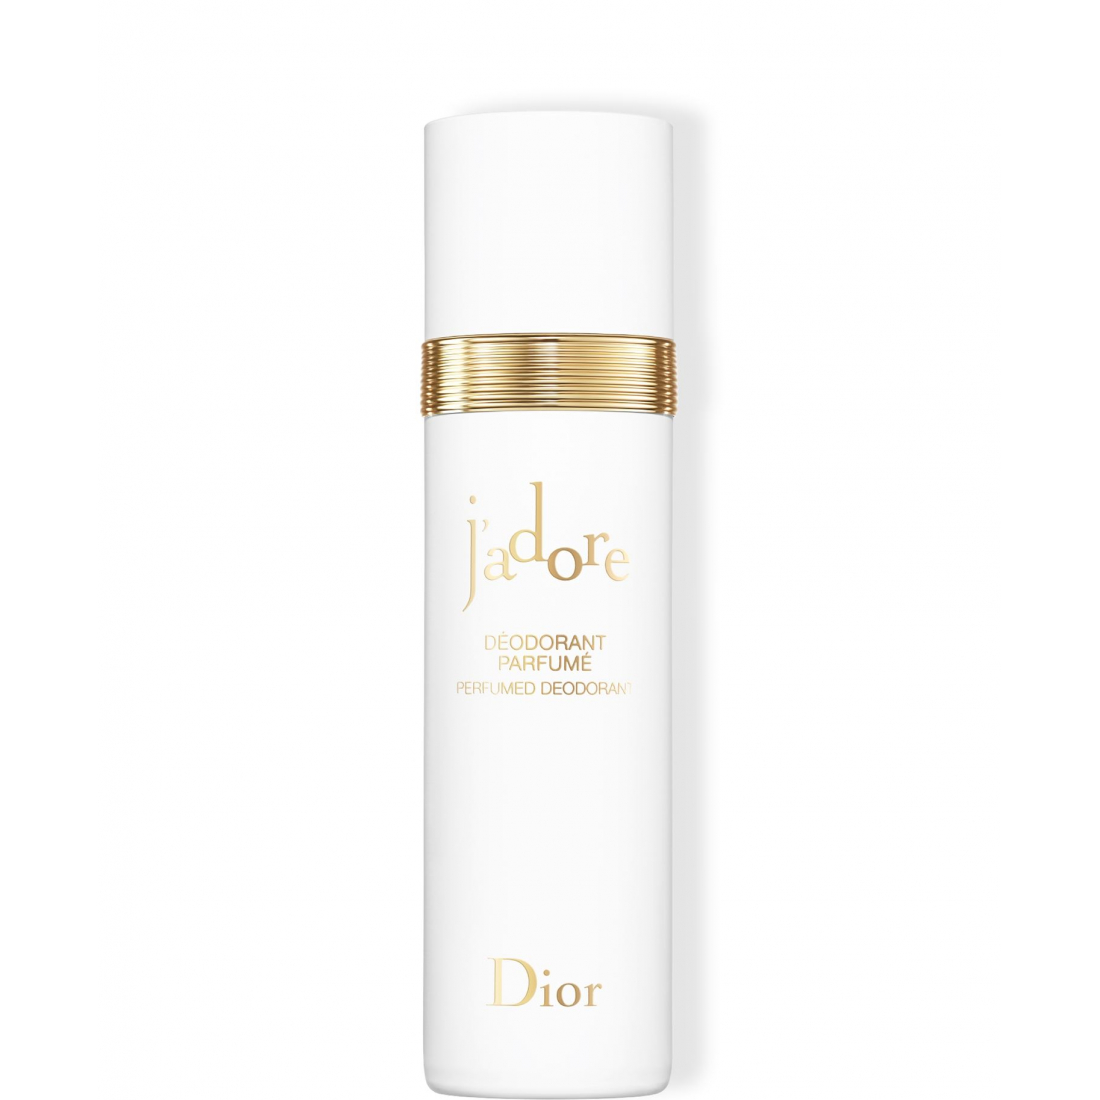 'J'Adore' Perfumed Deodorant - 100 ml